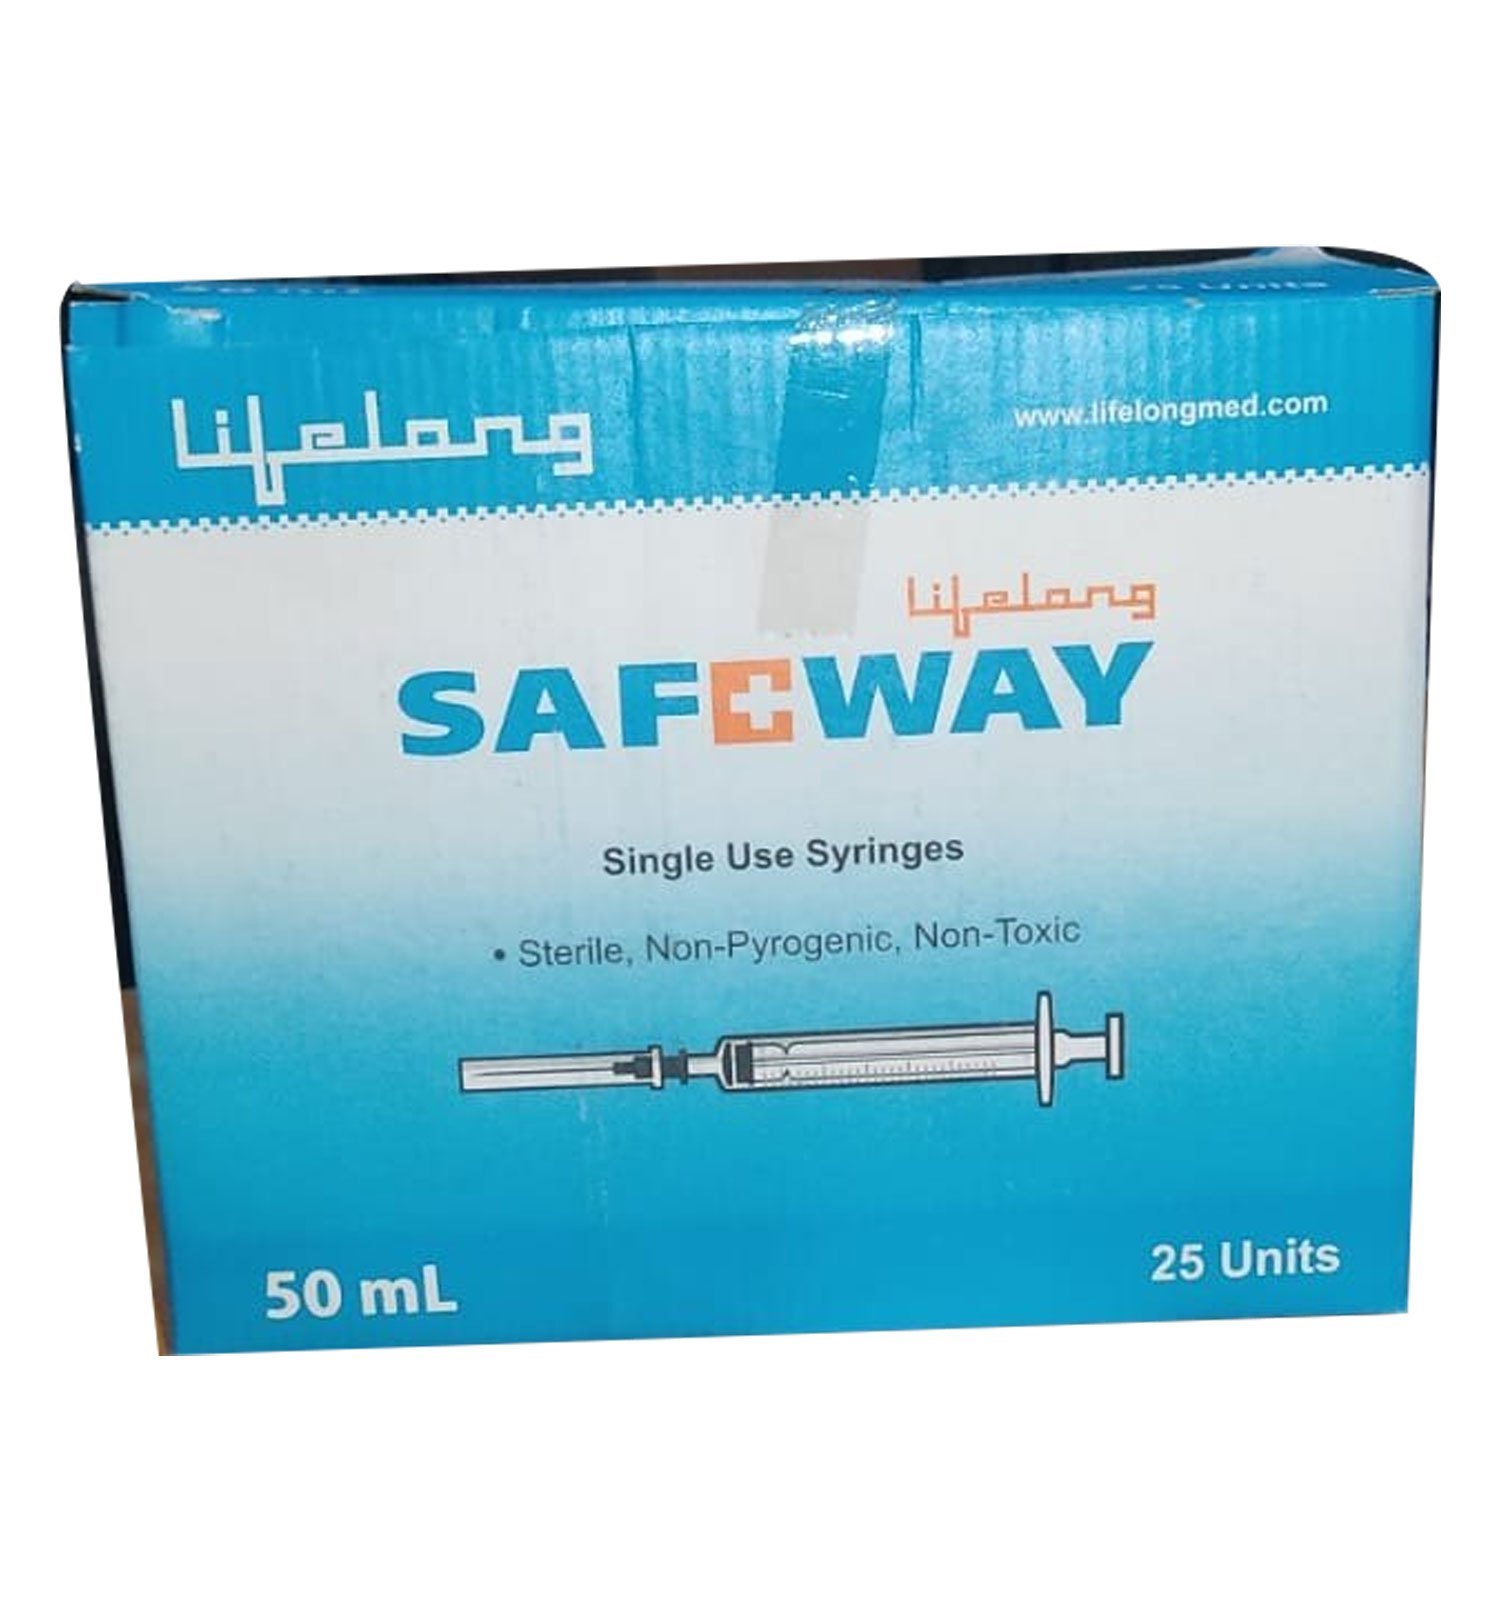 lifelong Safeway Syringe 50ml (25 Units)